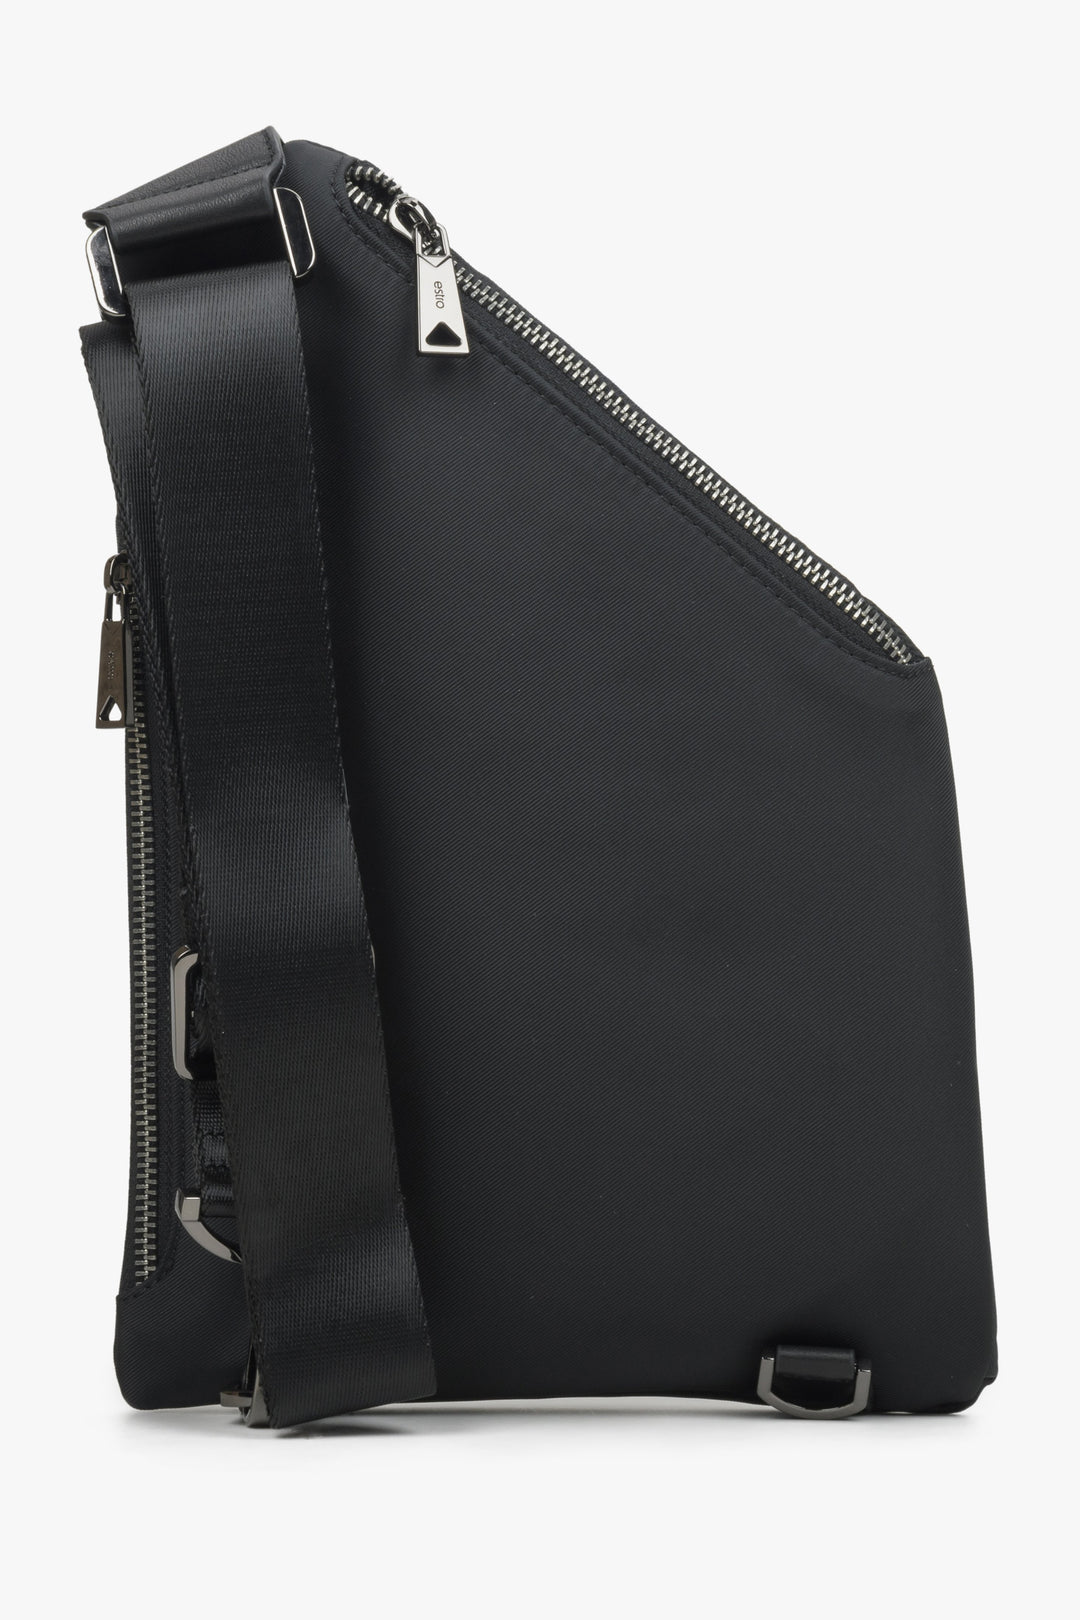 Estro men's leather-textile pouch - reverse side.